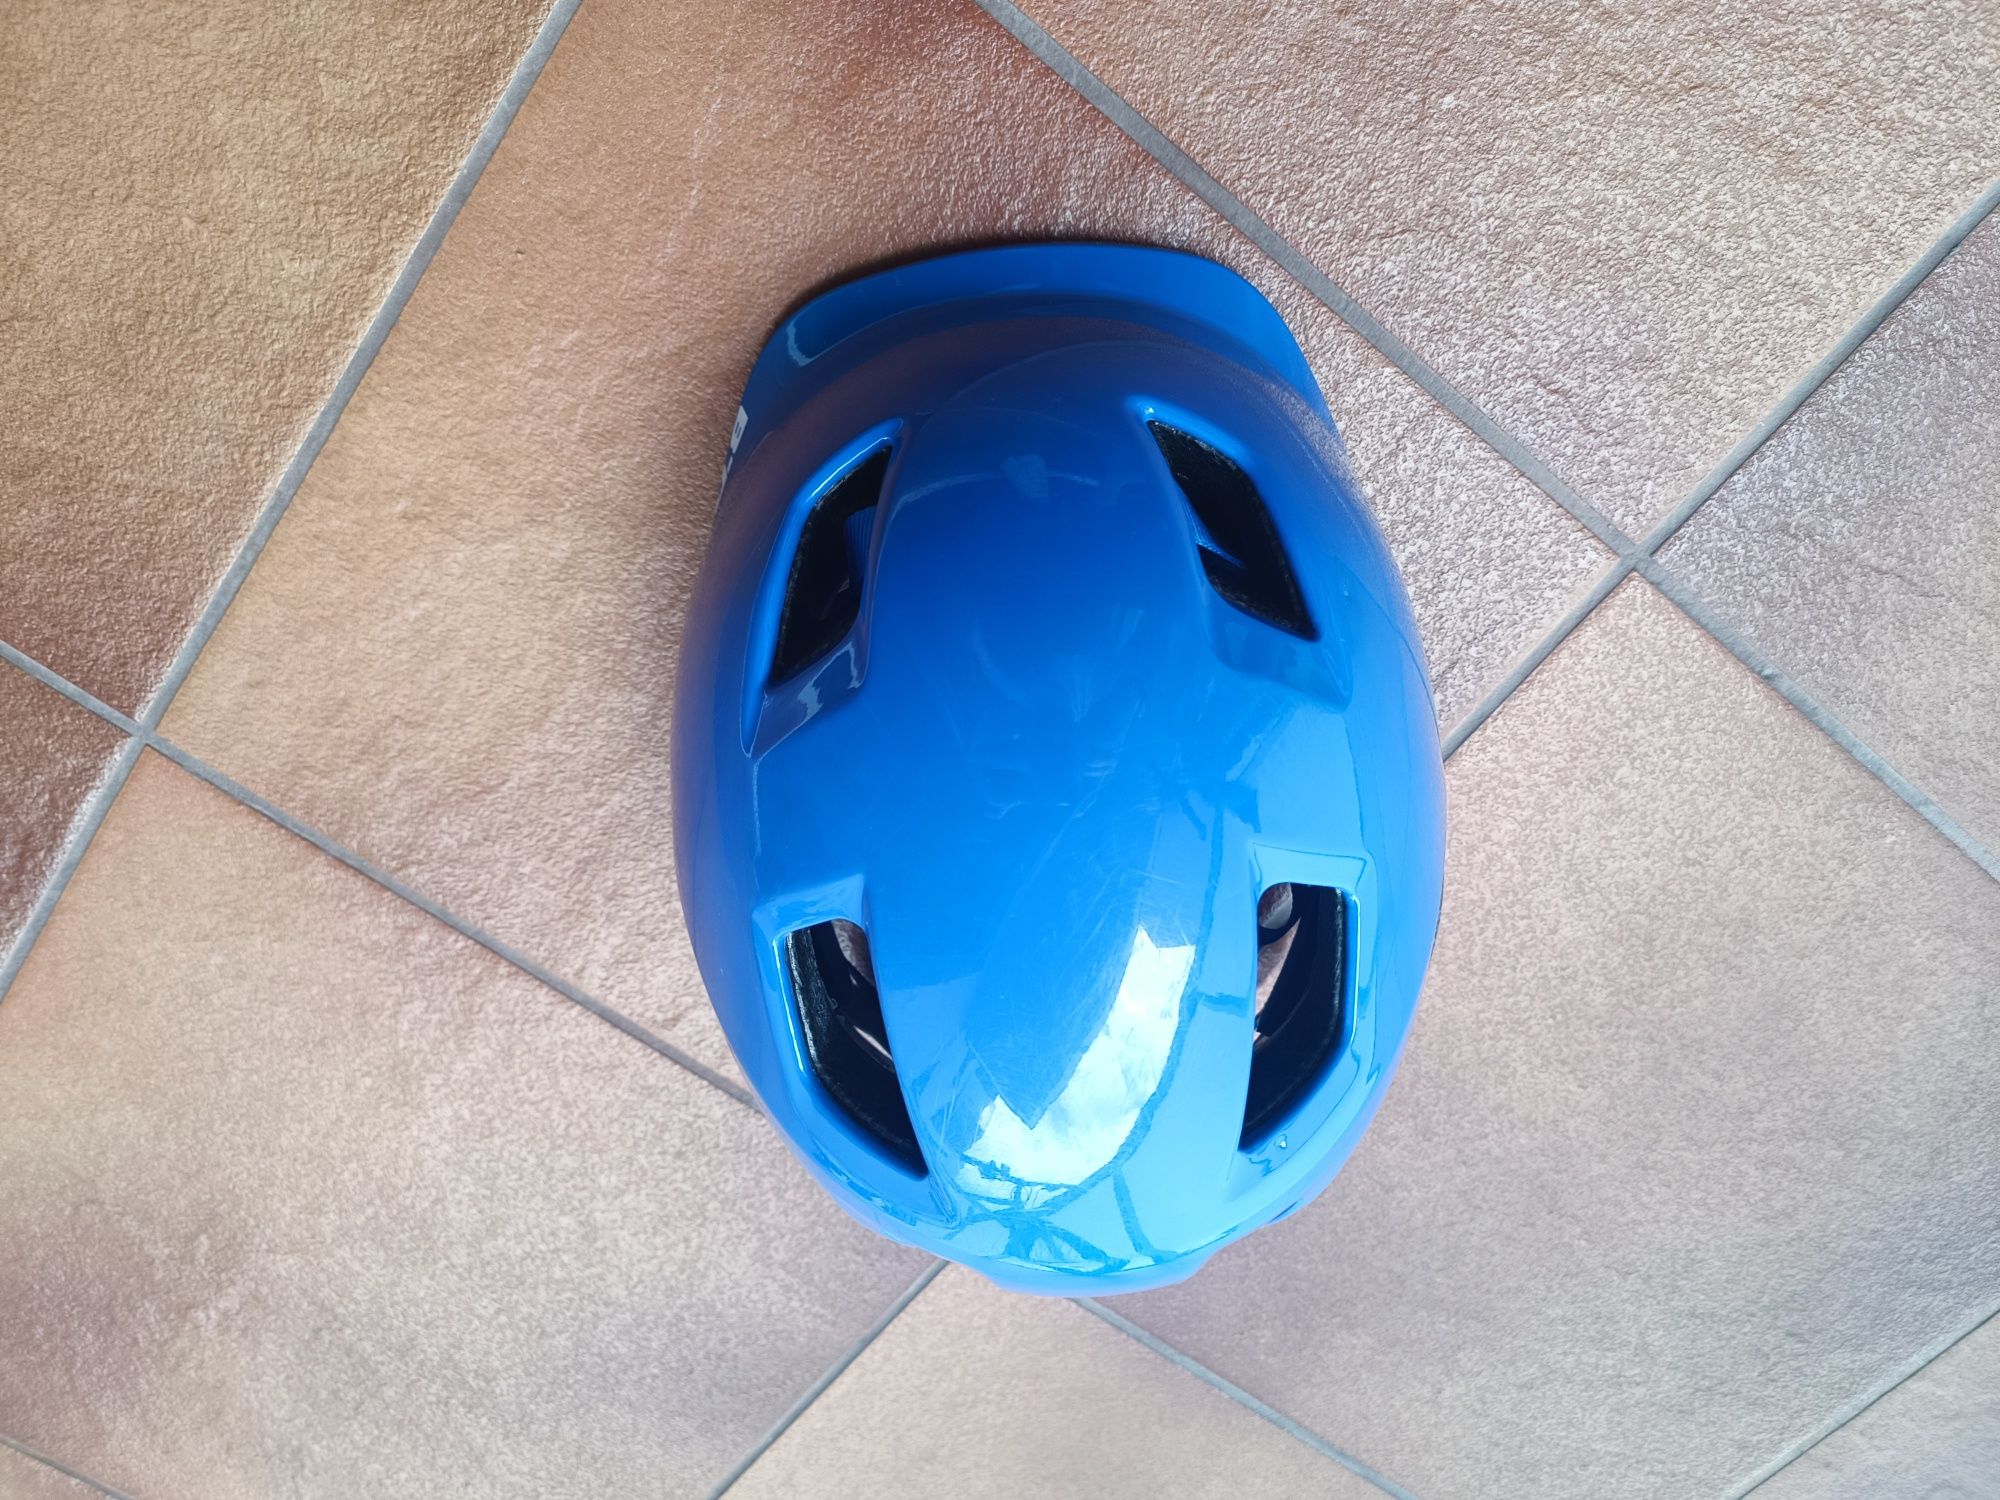 Kask rowerowy dla dziecka - bTwin 500 niebieski, rozmiar 48-52cm